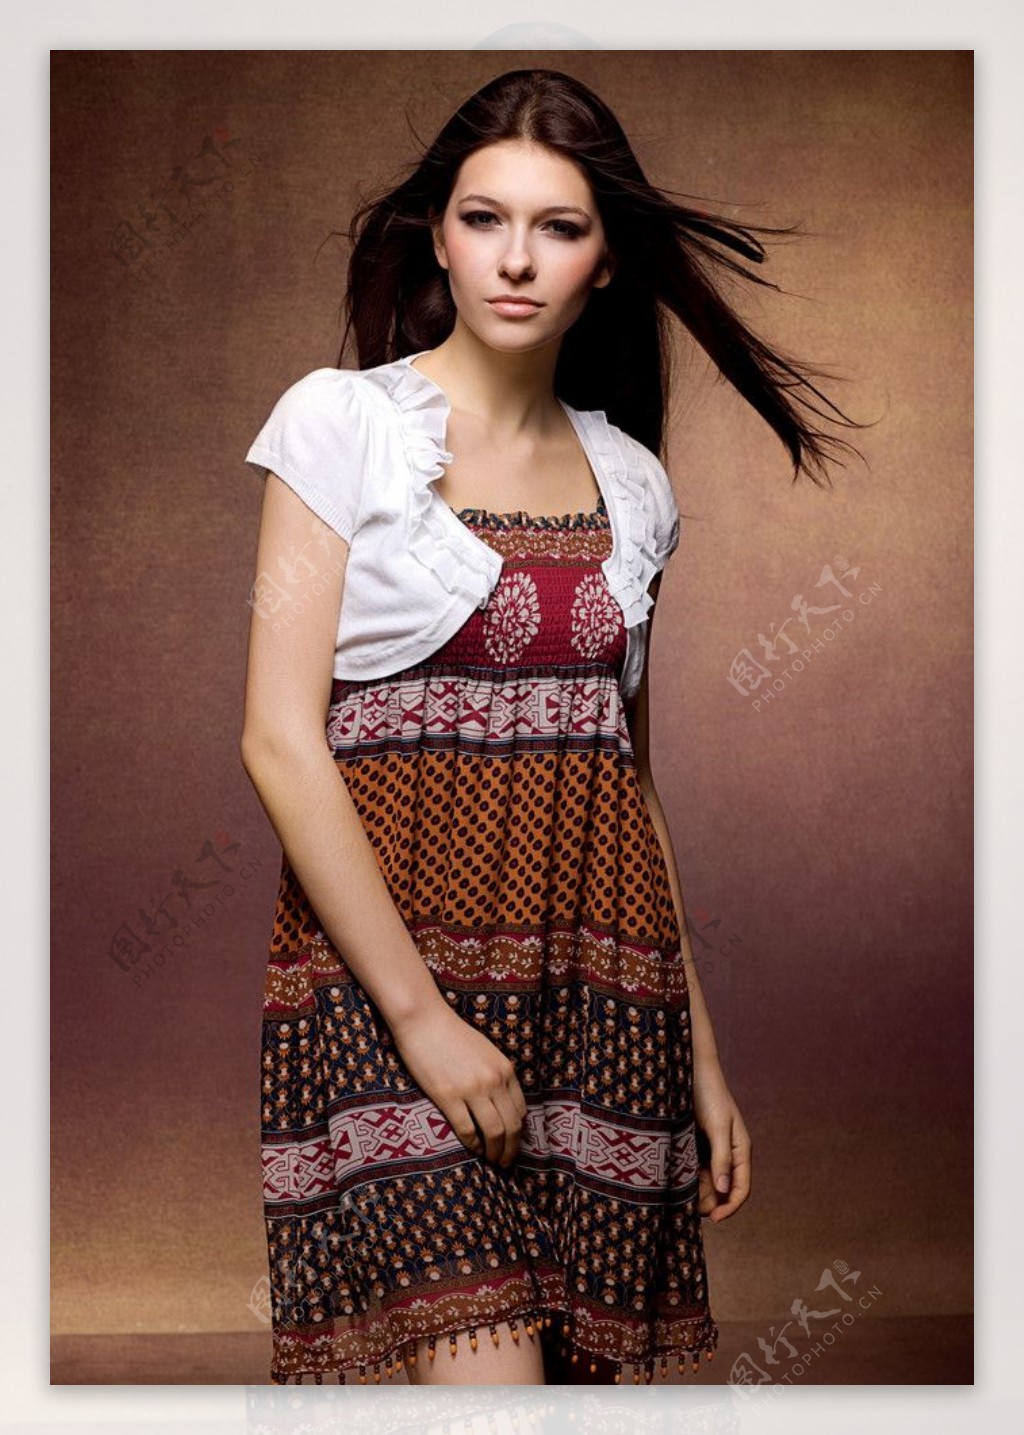 广告美女红袖裙子图片